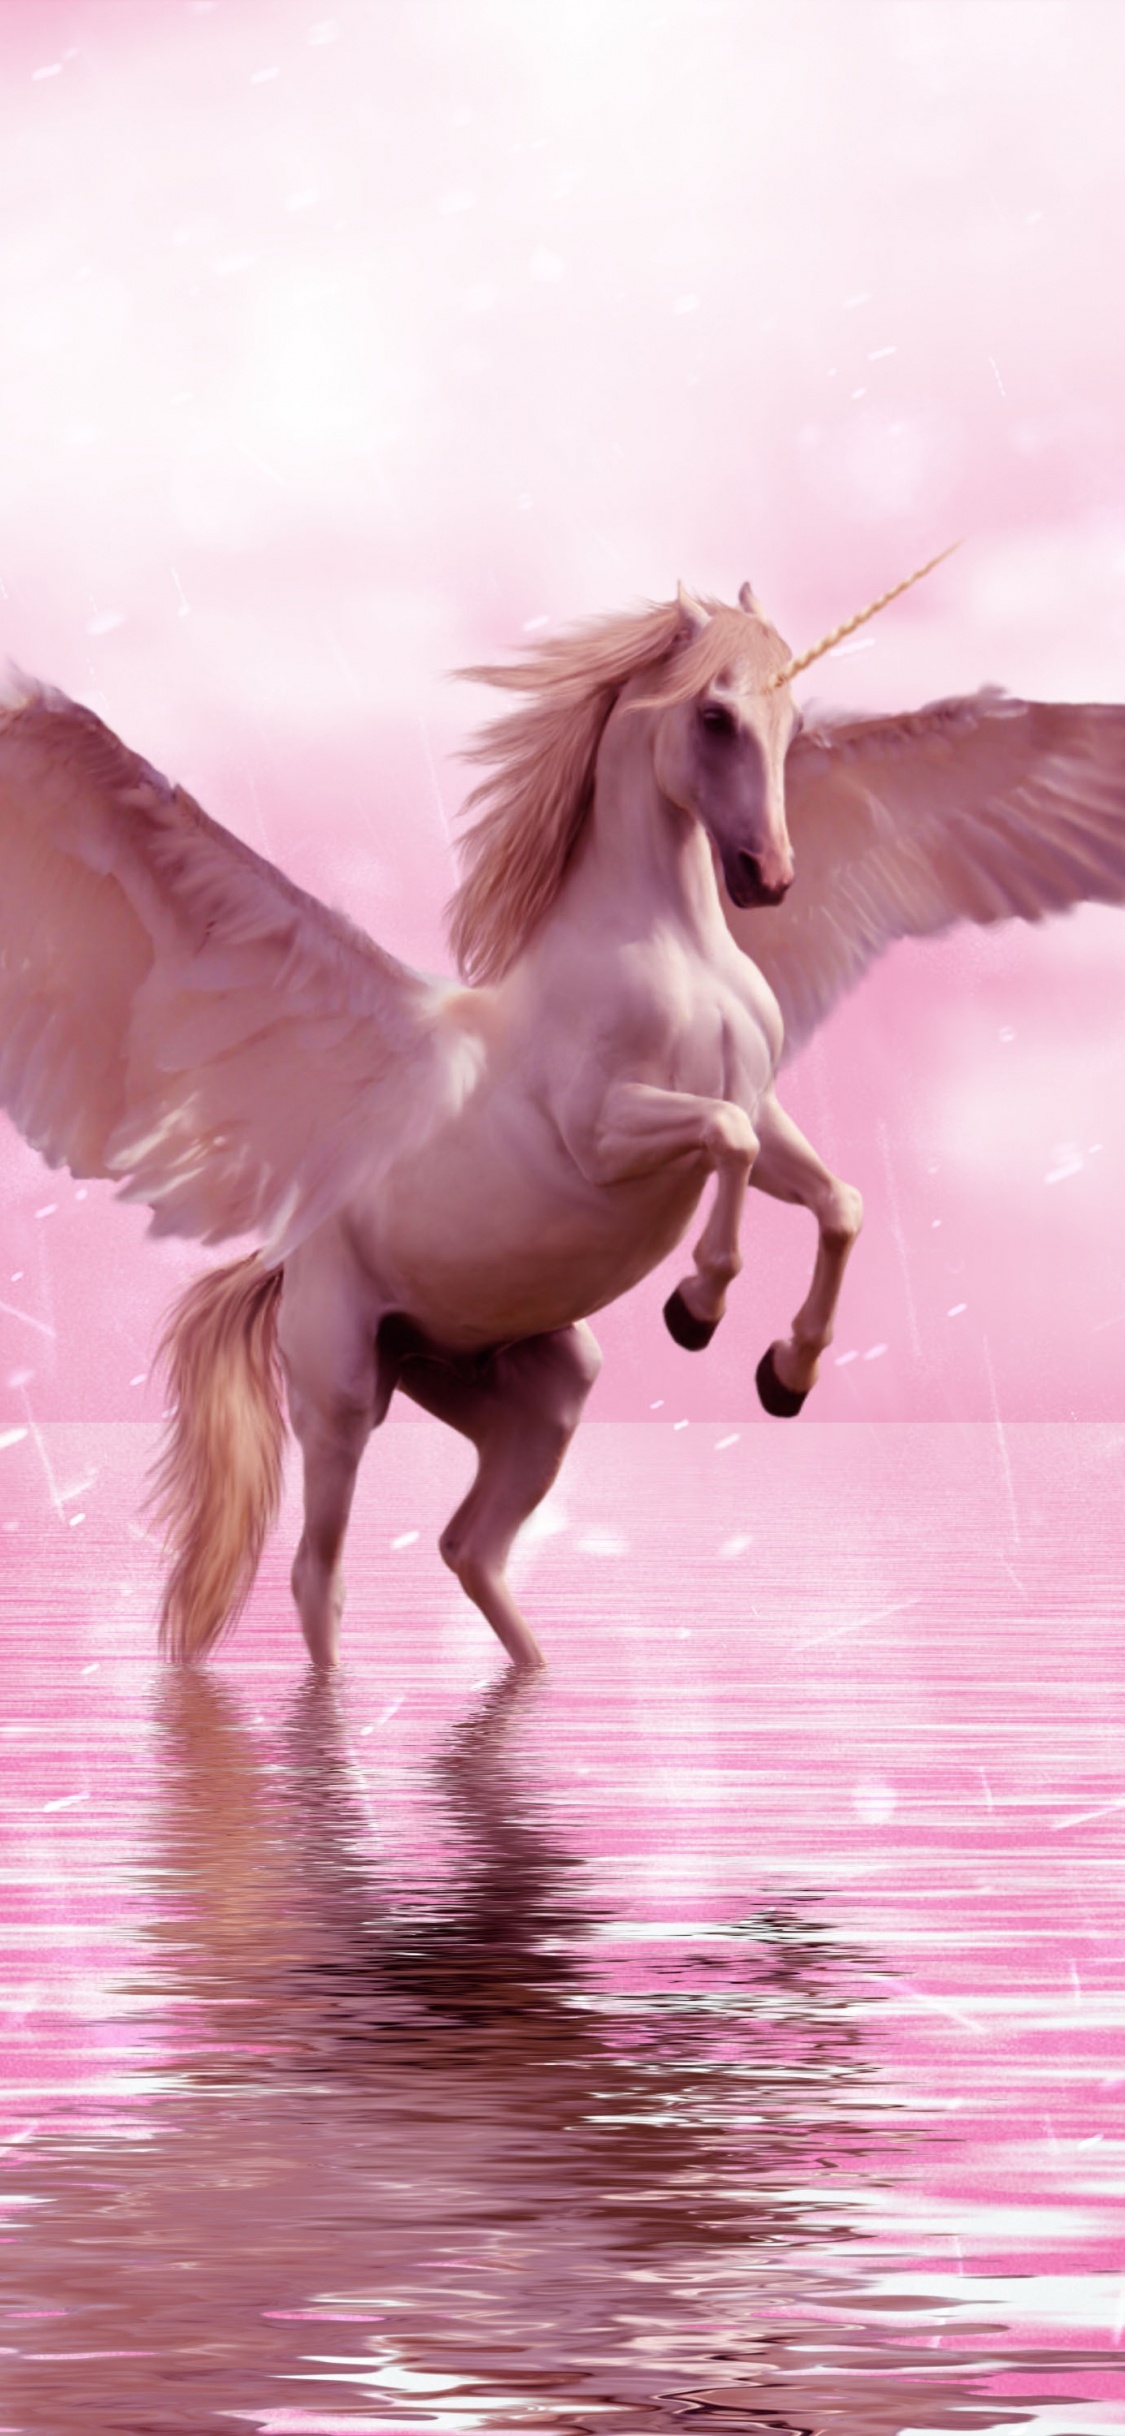 独角兽, 飞马, 翼, 粉红色, 神秘的生物 壁纸 1125x2436 允许